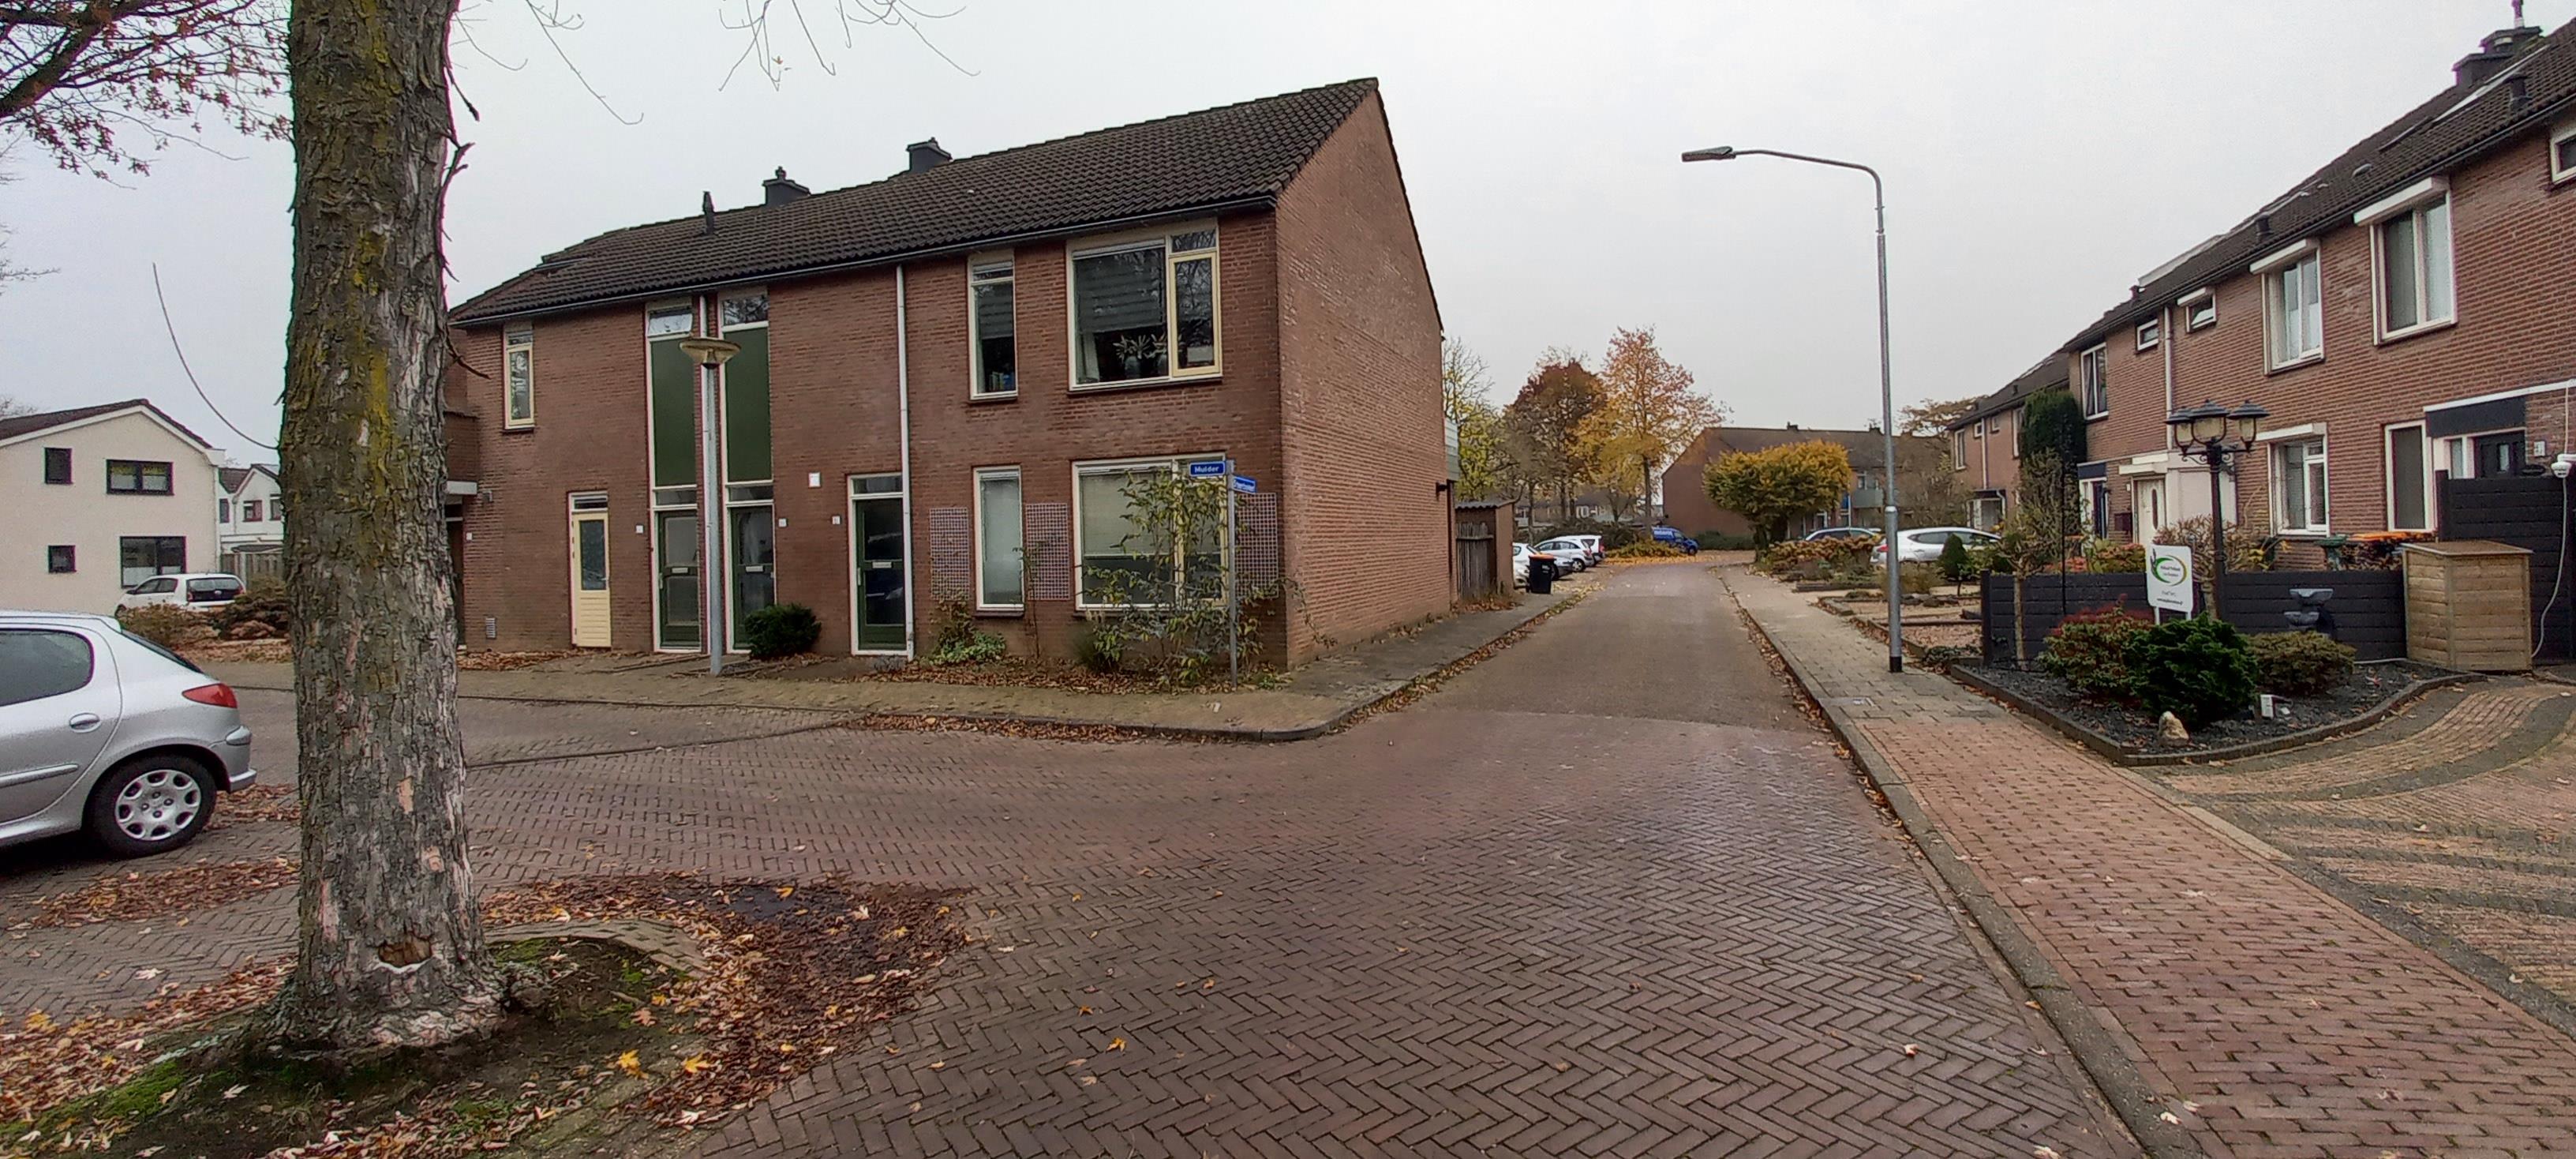 Mulder 61, 6641 GN Beuningen, Nederland